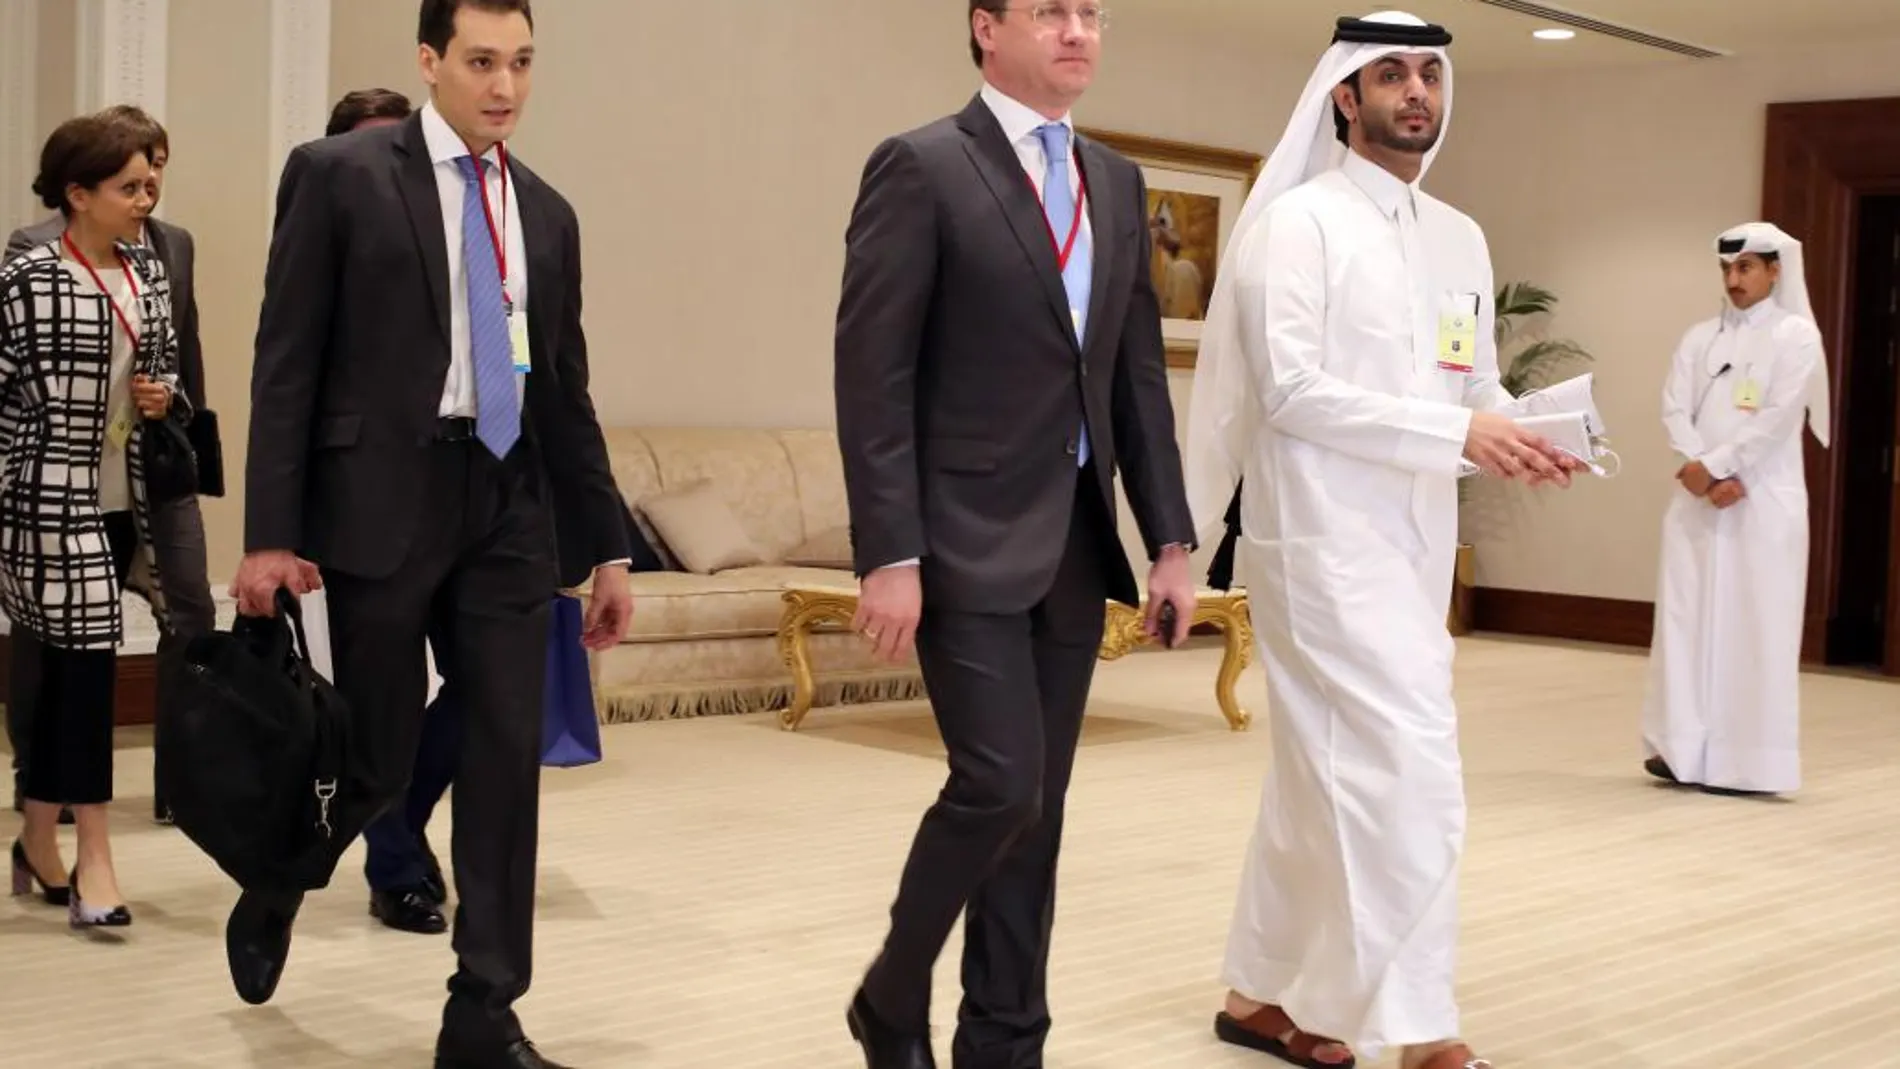 El ministro de Energía ruso Alexander Novak, llega en Doha a la reunión de países productores de petróleo.